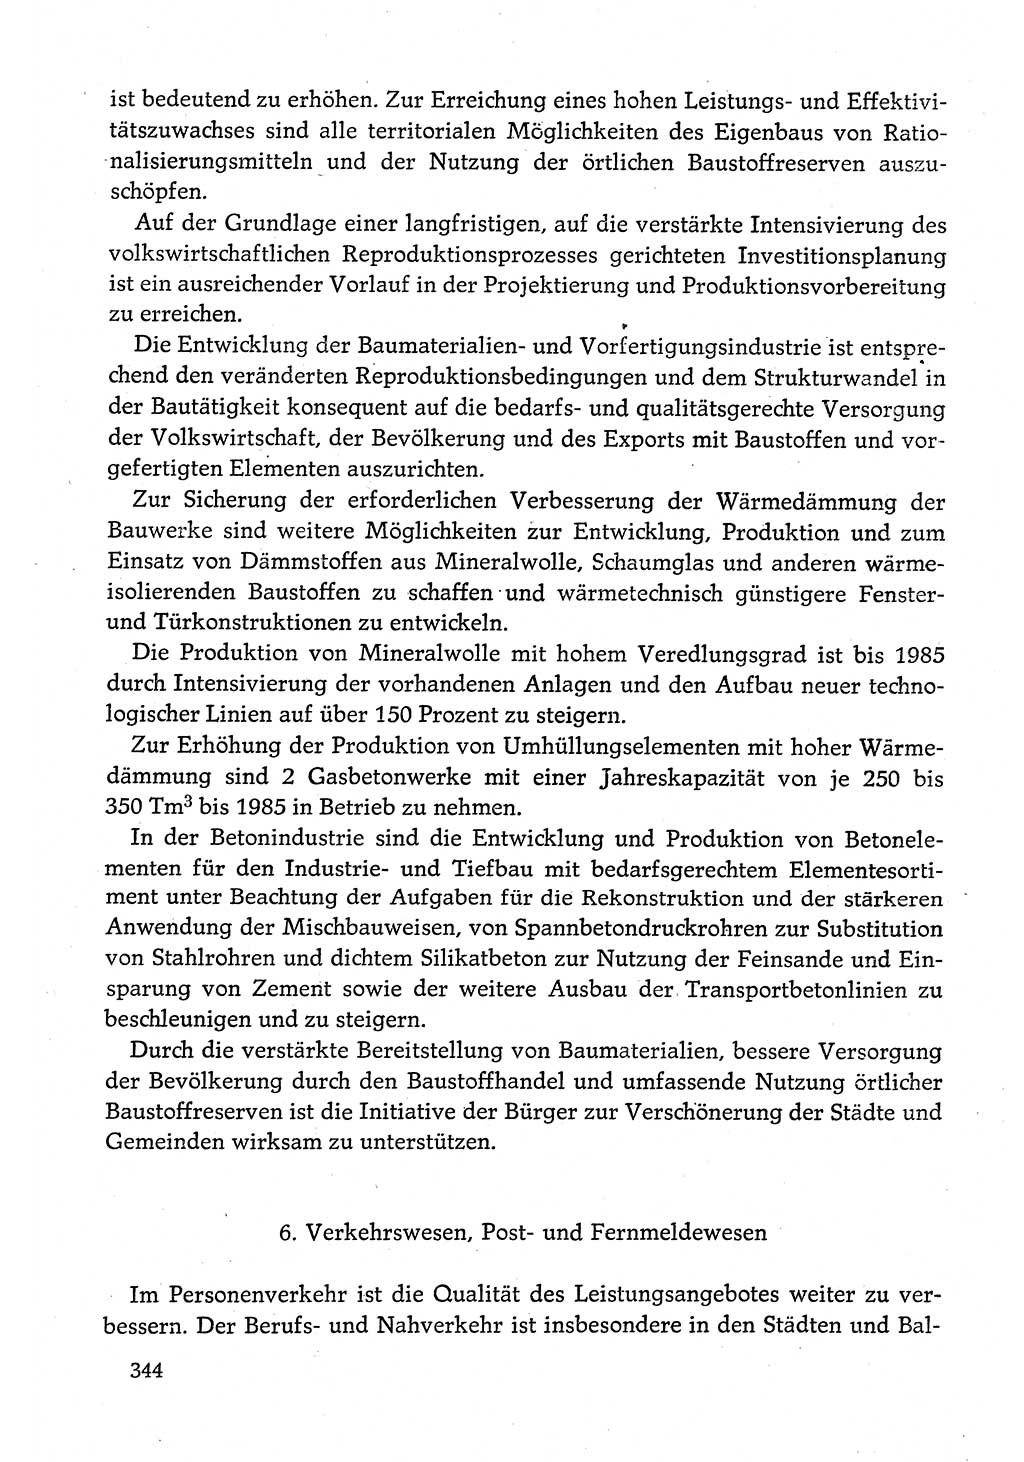 Dokumente der Sozialistischen Einheitspartei Deutschlands (SED) [Deutsche Demokratische Republik (DDR)] 1980-1981, Seite 344 (Dok. SED DDR 1980-1981, S. 344)